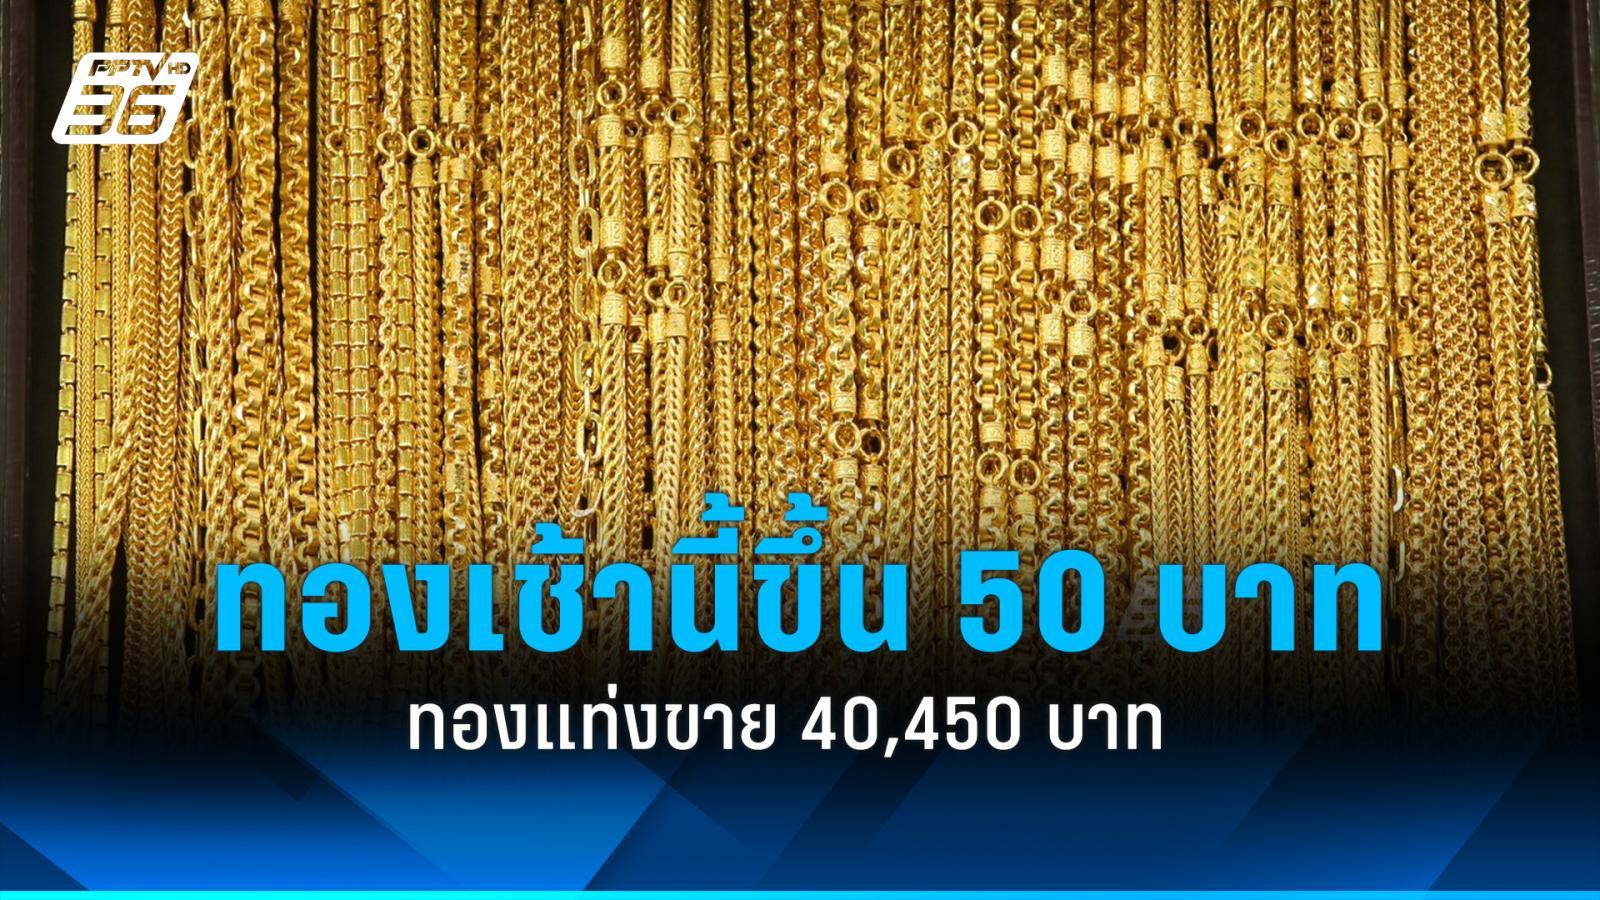 ราคาทองวันนี้ (8 พ.ค. 2567) เปิดตลาด เพิ่มขึ้น 50 บาท ทองแท่งขาย 40,450 บาท